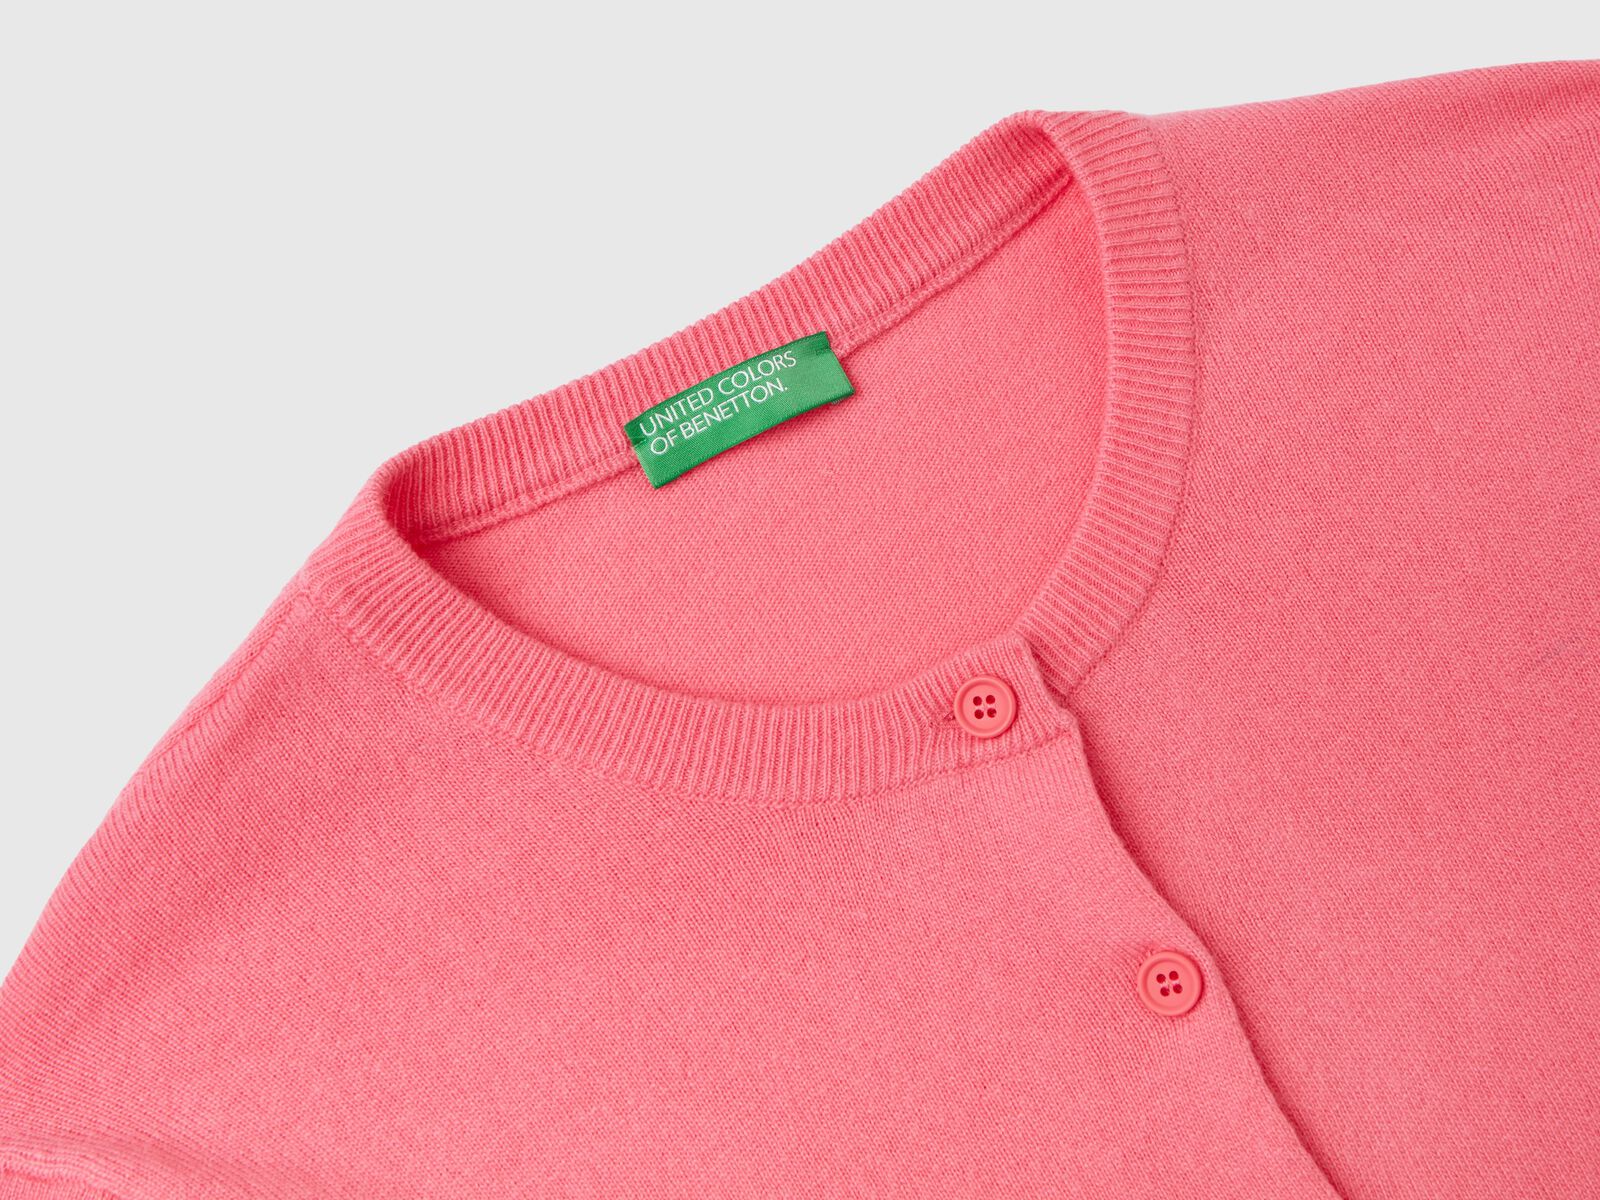 Strickjacke in einer Mischung aus Wolle und Cashmere in Rosa - Pink |  Benetton